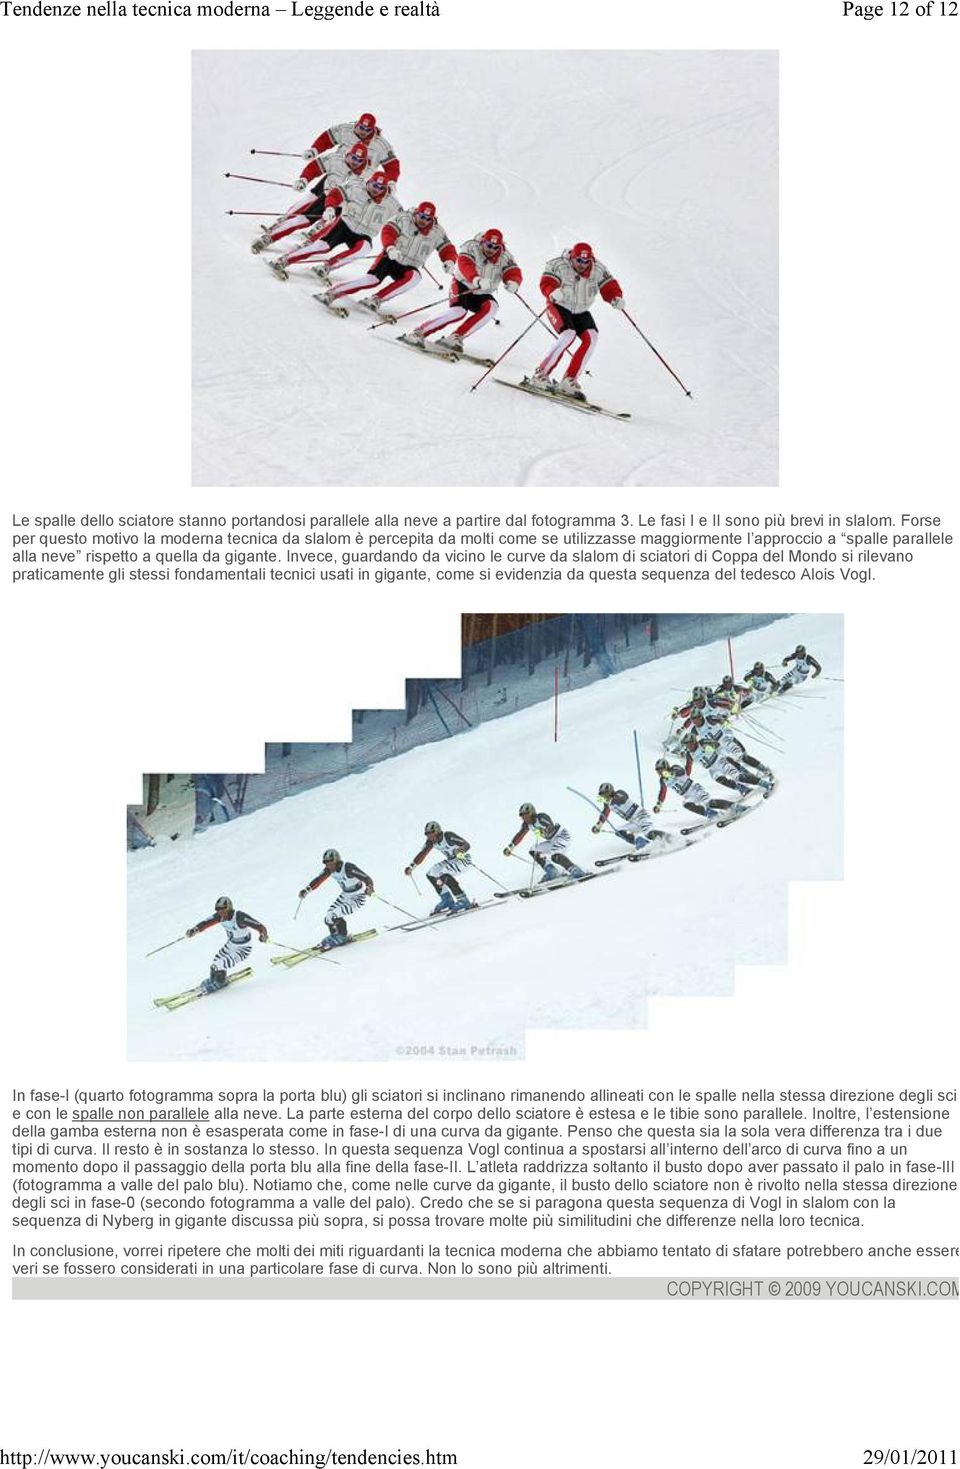 Invece, guardando da vicino le curve da slalom di sciatori di Coppa del Mondo si rilevano praticamente gli stessi fondamentali tecnici usati in gigante, come si evidenzia da questa sequenza del